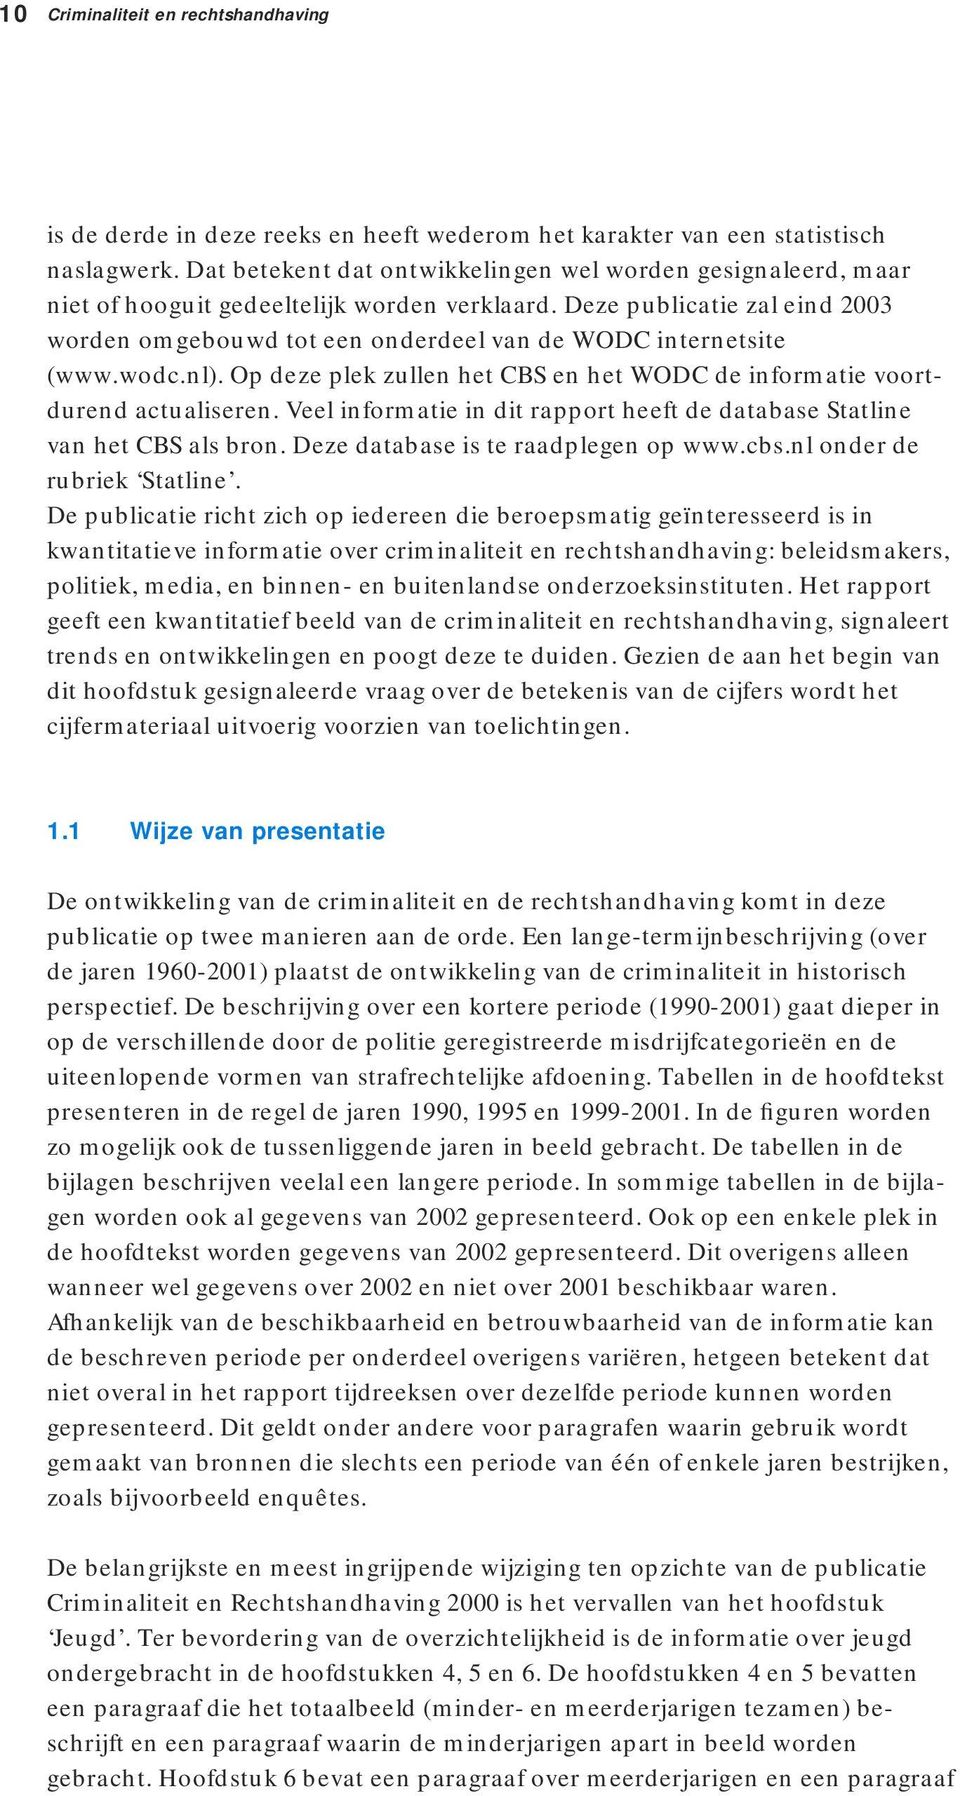 Deze publicatie zal eind 2003 worden omgebouwd tot een onderdeel van de WODC internetsite (www.wodc.nl). Op deze plek zullen het CBS en het WODC de informatie voortdurend actualiseren.